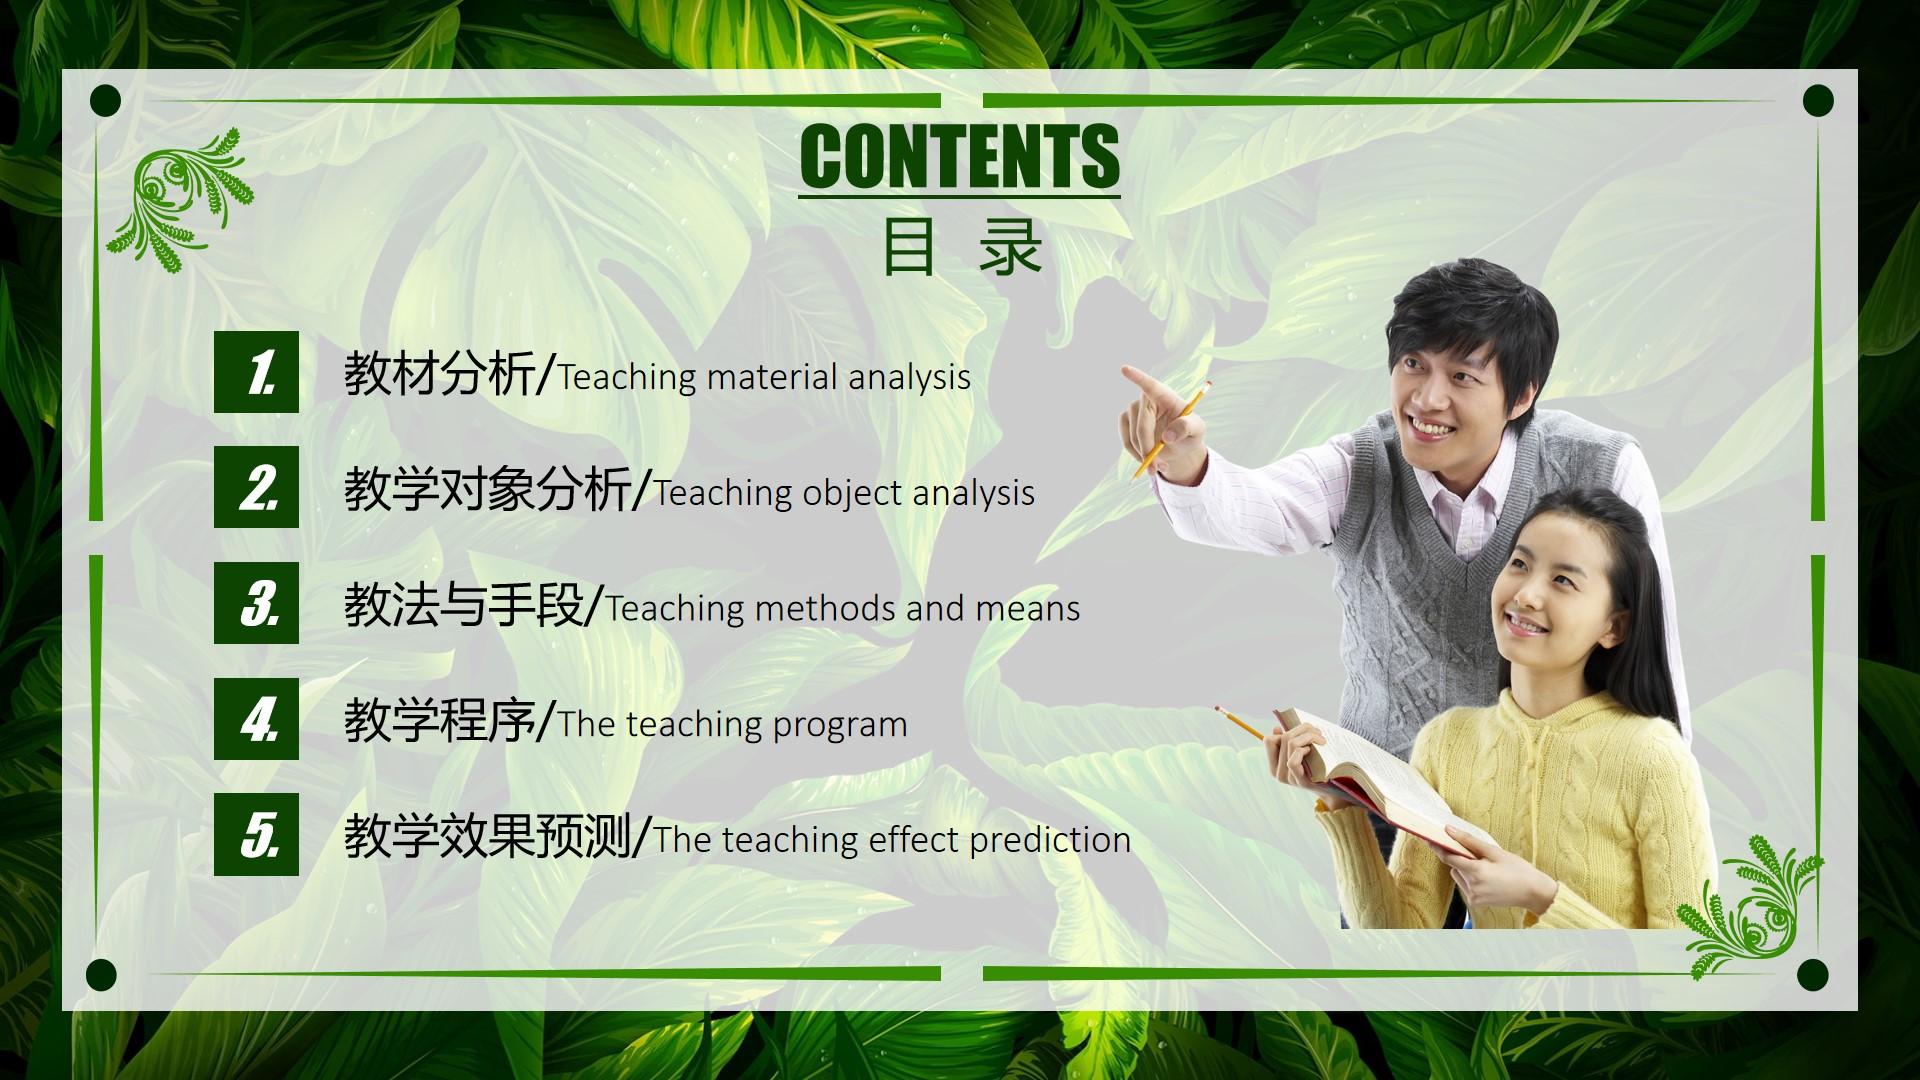 教育教学绿色黑色白色实景teaching 教学 analysis 程序 methods云素材PPT模板1672469481794